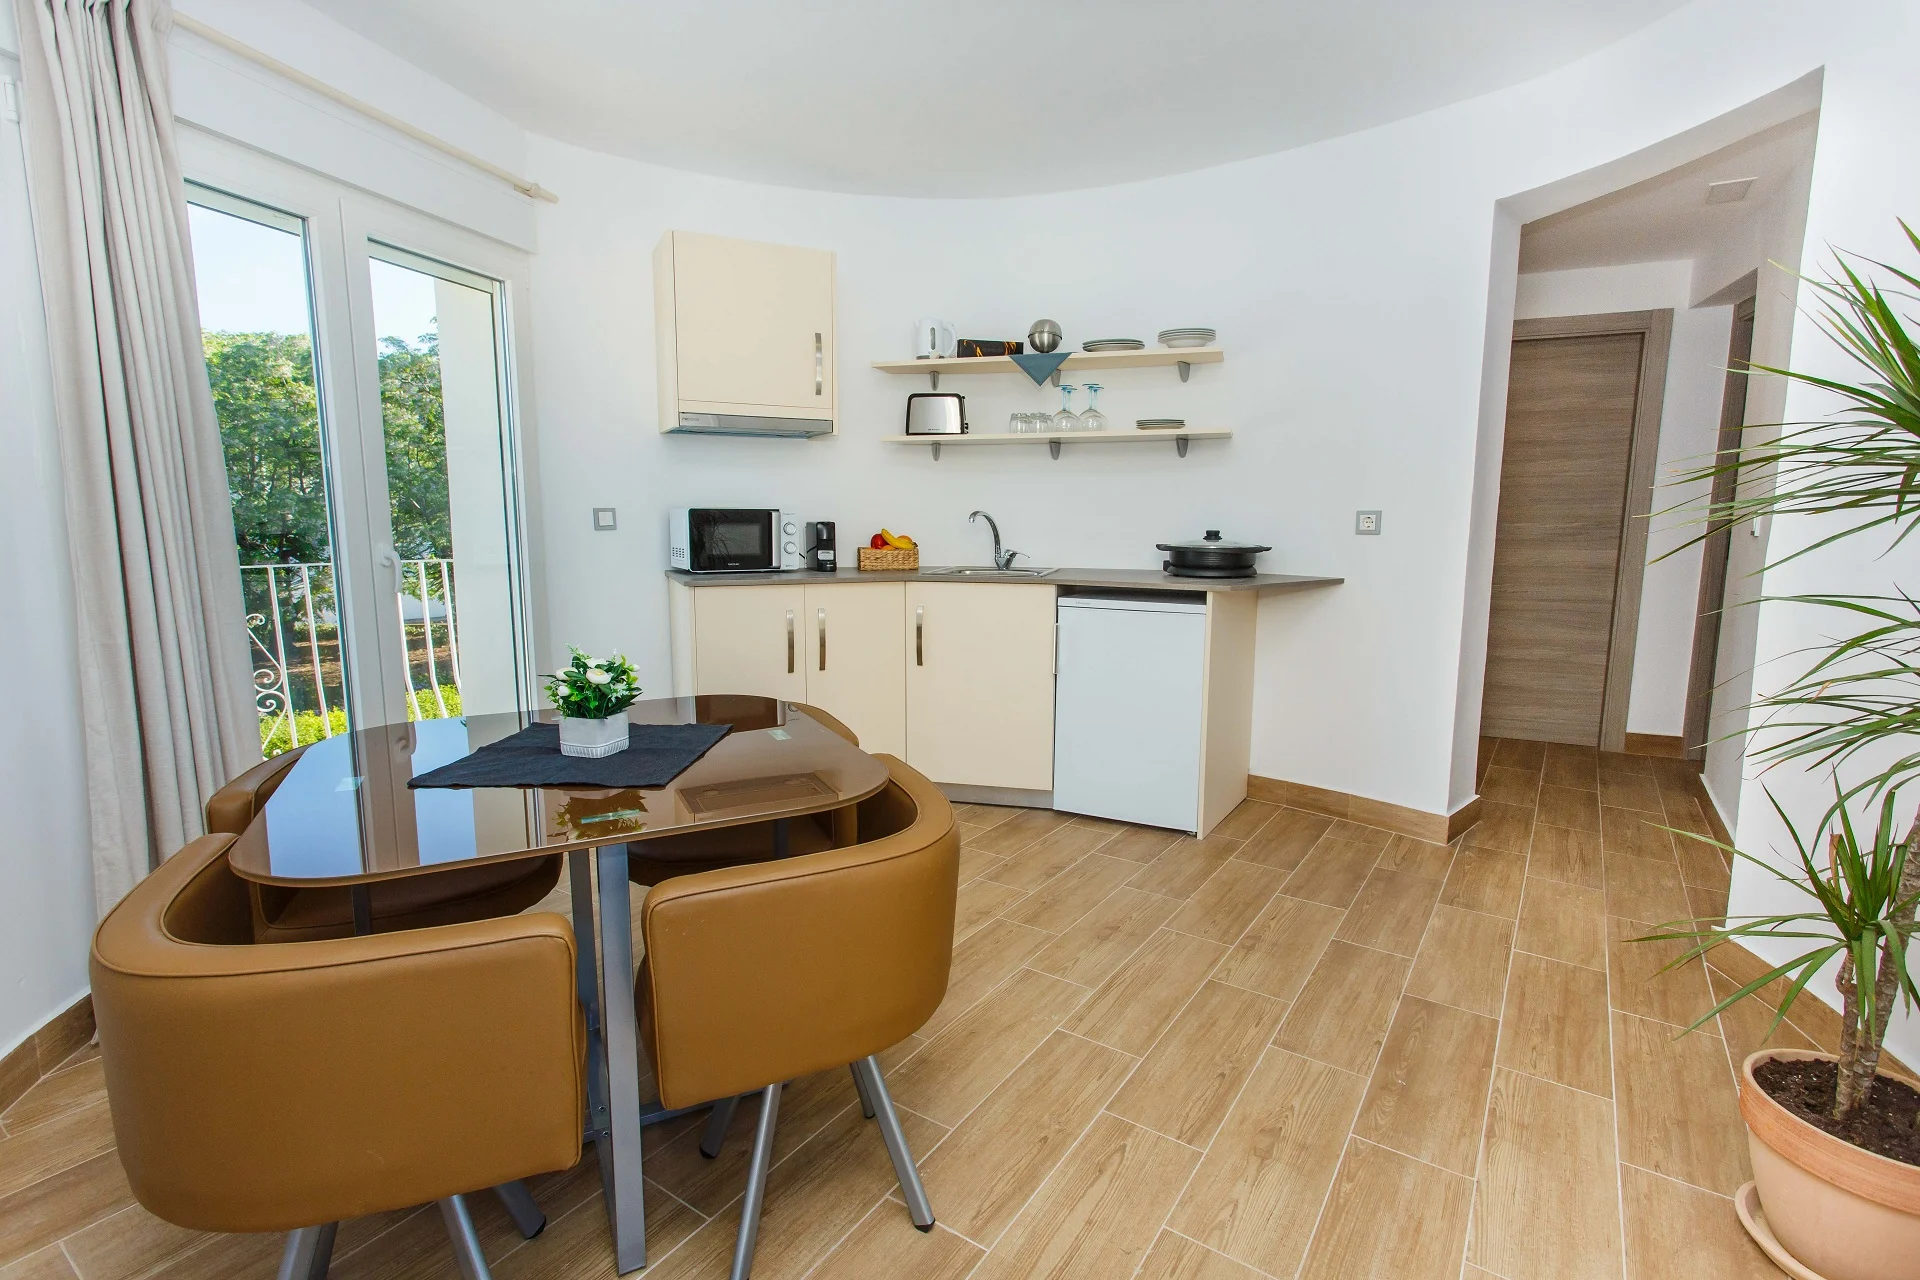 En este apartamento contarás con una cocina toda equipada, lo que te hará sentirte como en casa